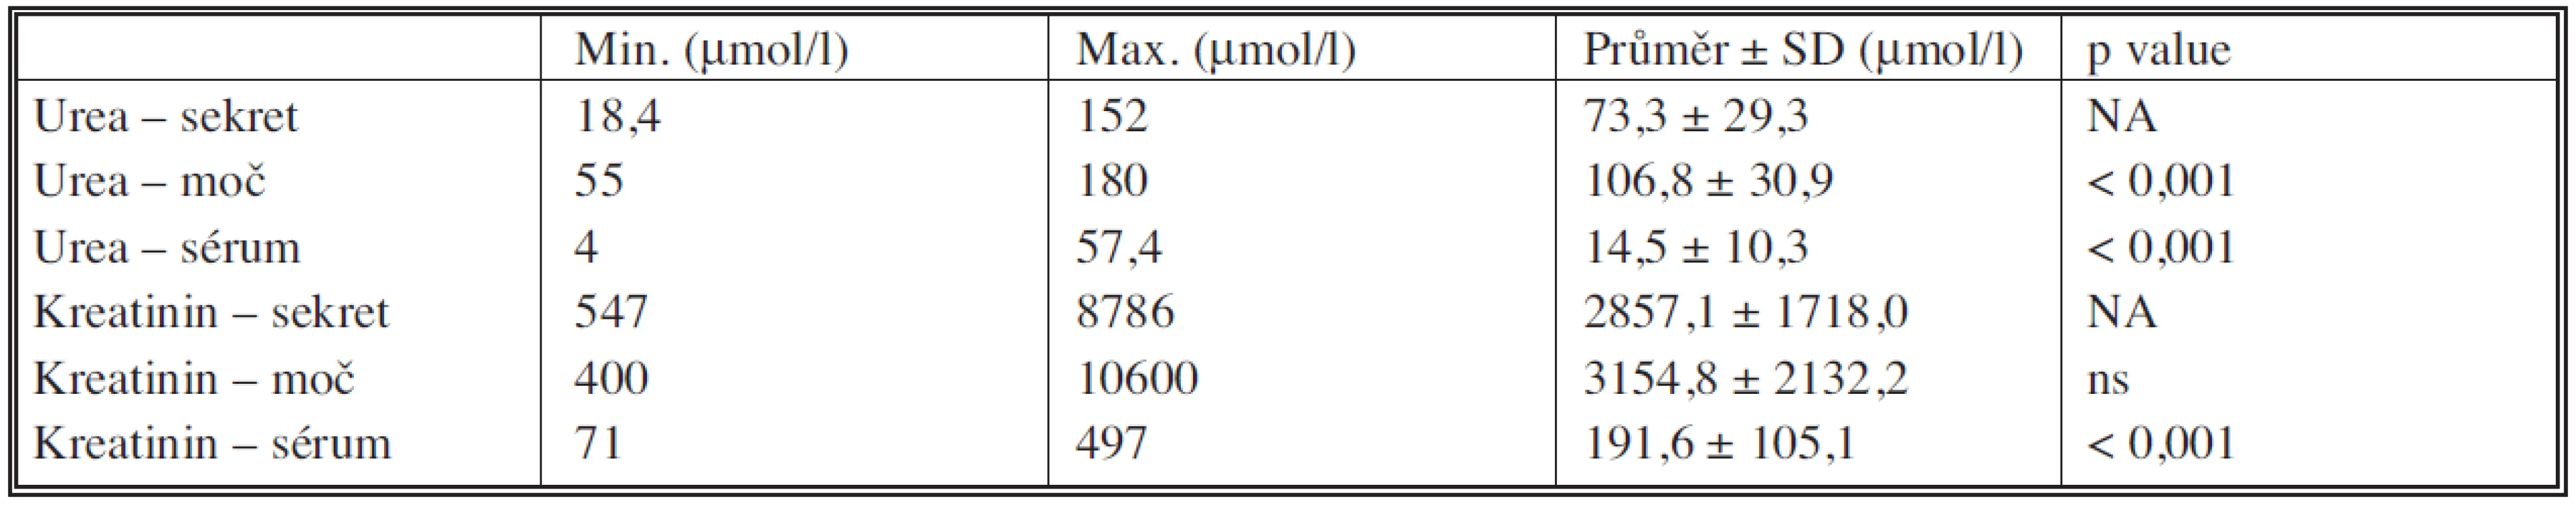 Výsledky vyšetření hladin urey a kreatininu v urinózním sekretu, moči a séru
Tab. 4. Results of the analysis of urea and creatinine levels in the urinary secterion, urine and serum